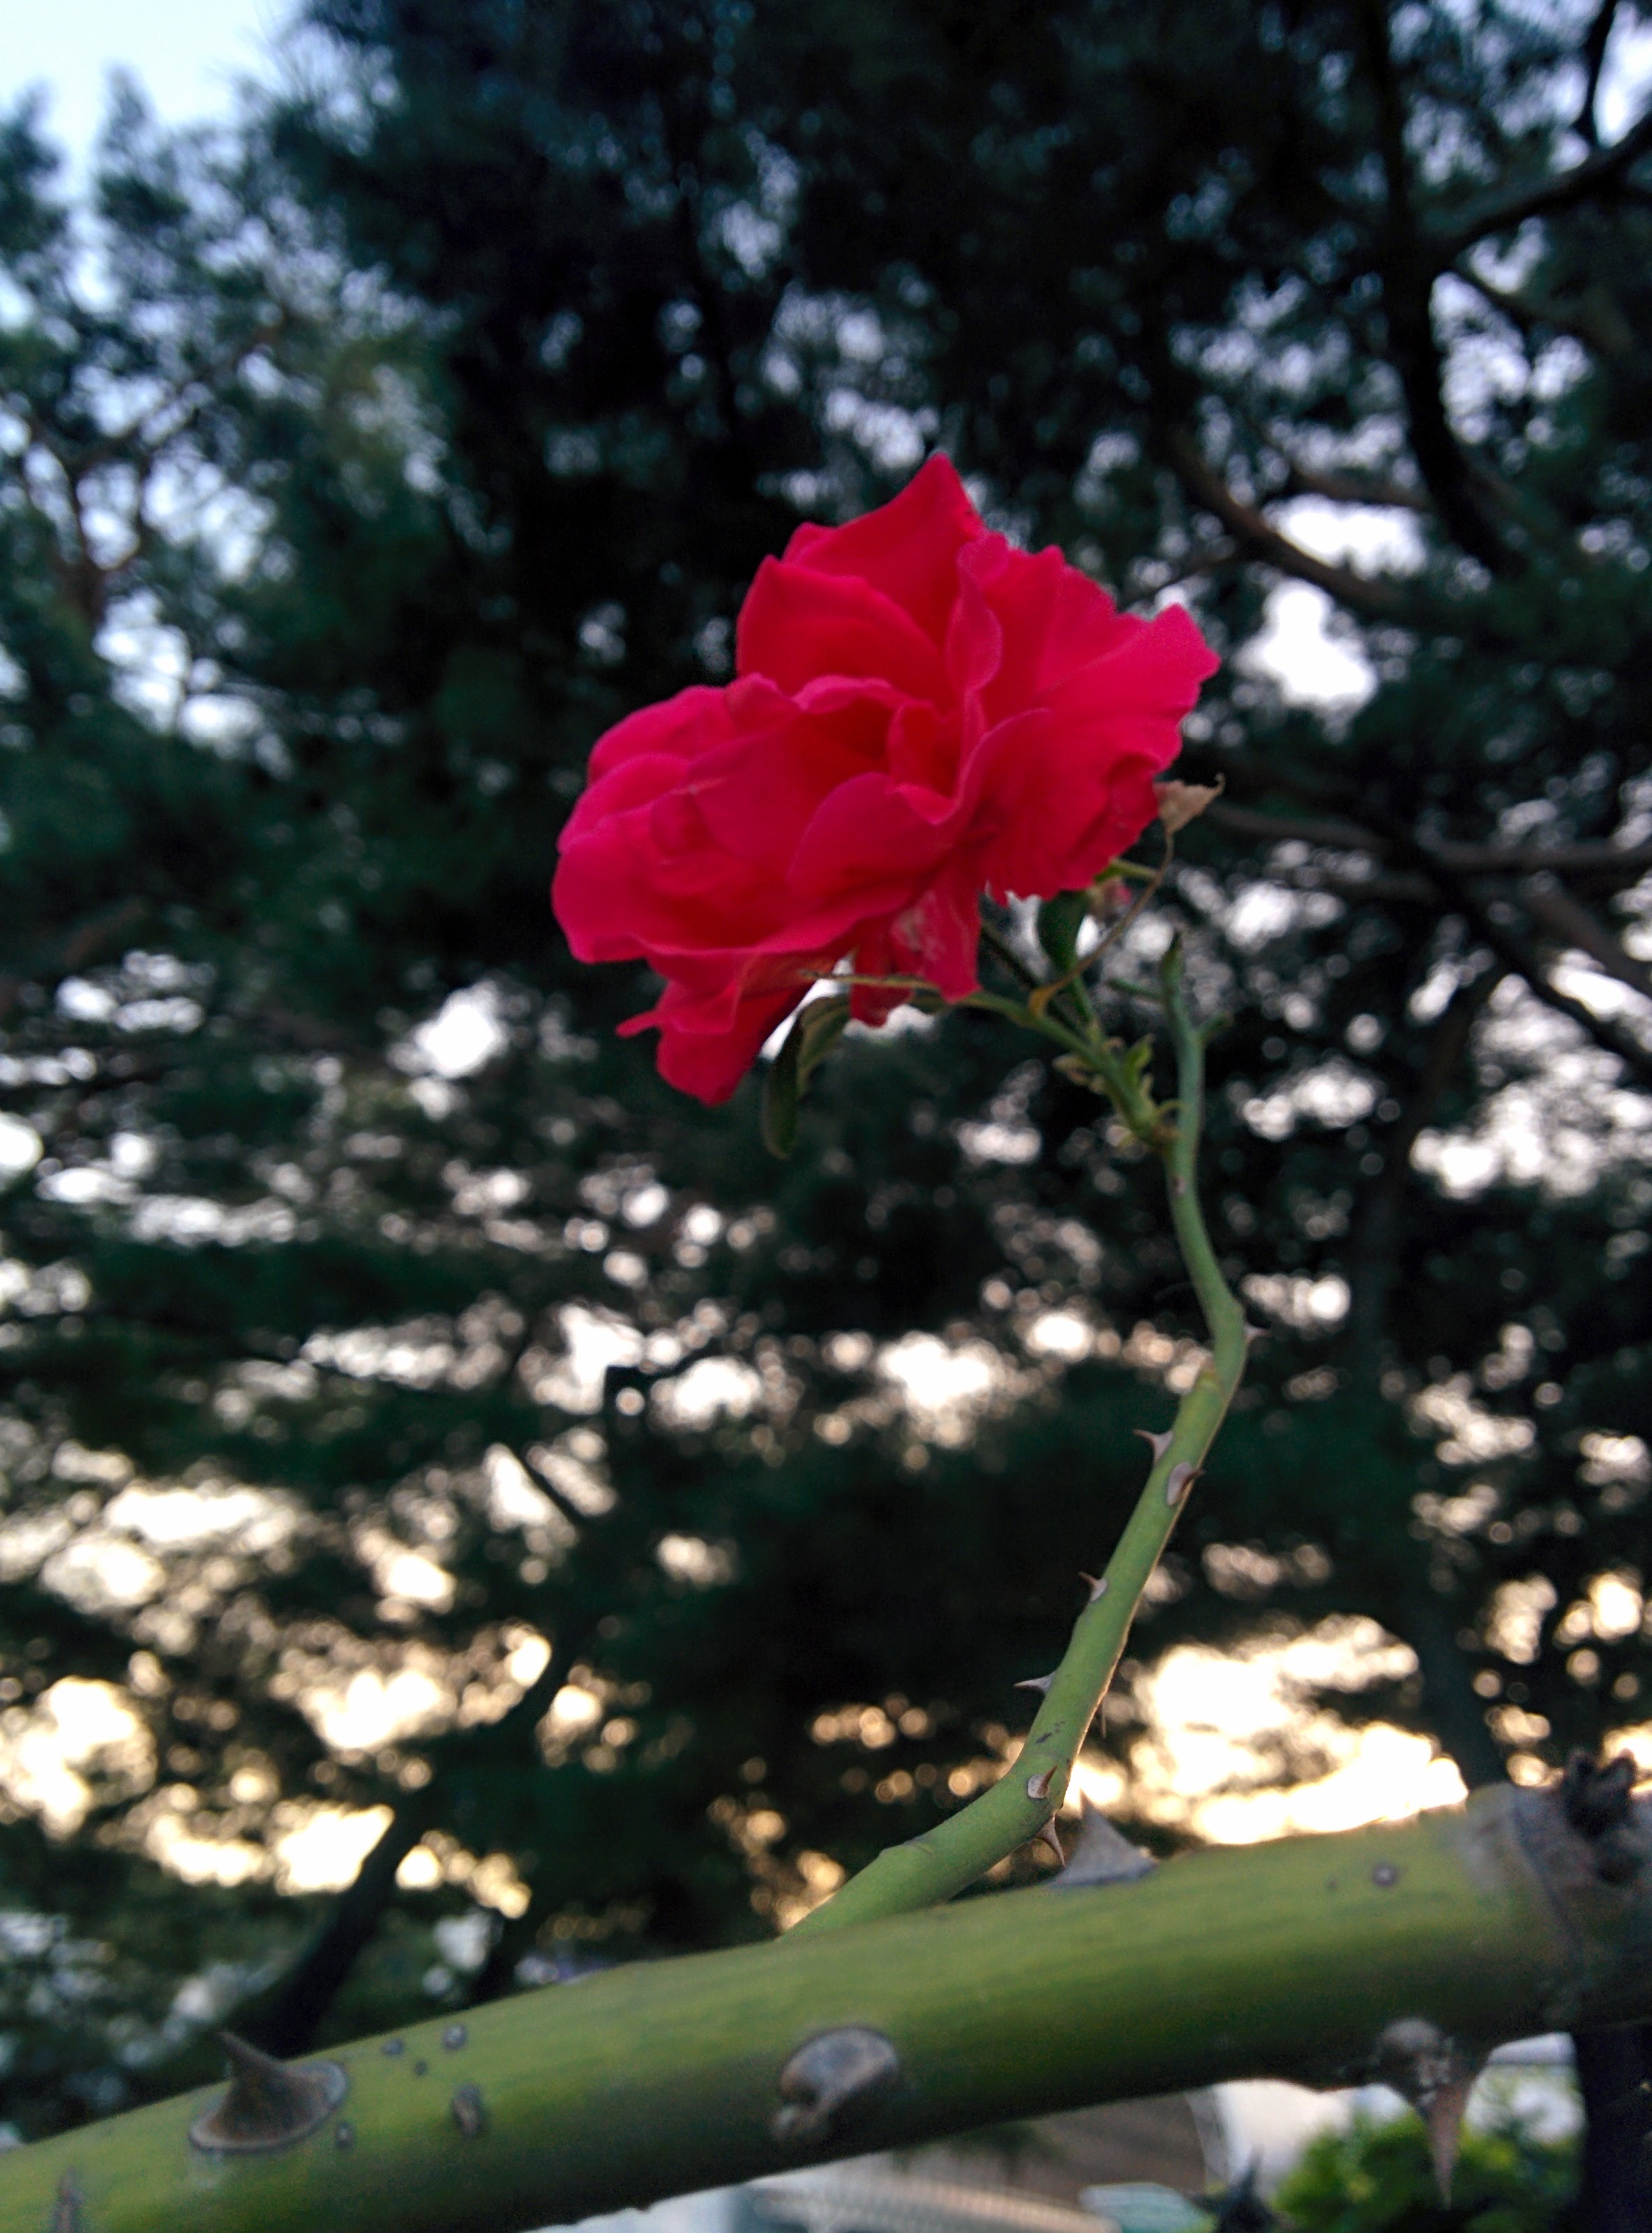 IMG_20150922_181259.jpg 장미, 늦은 9월의 빨간색 꽃을 피우다.